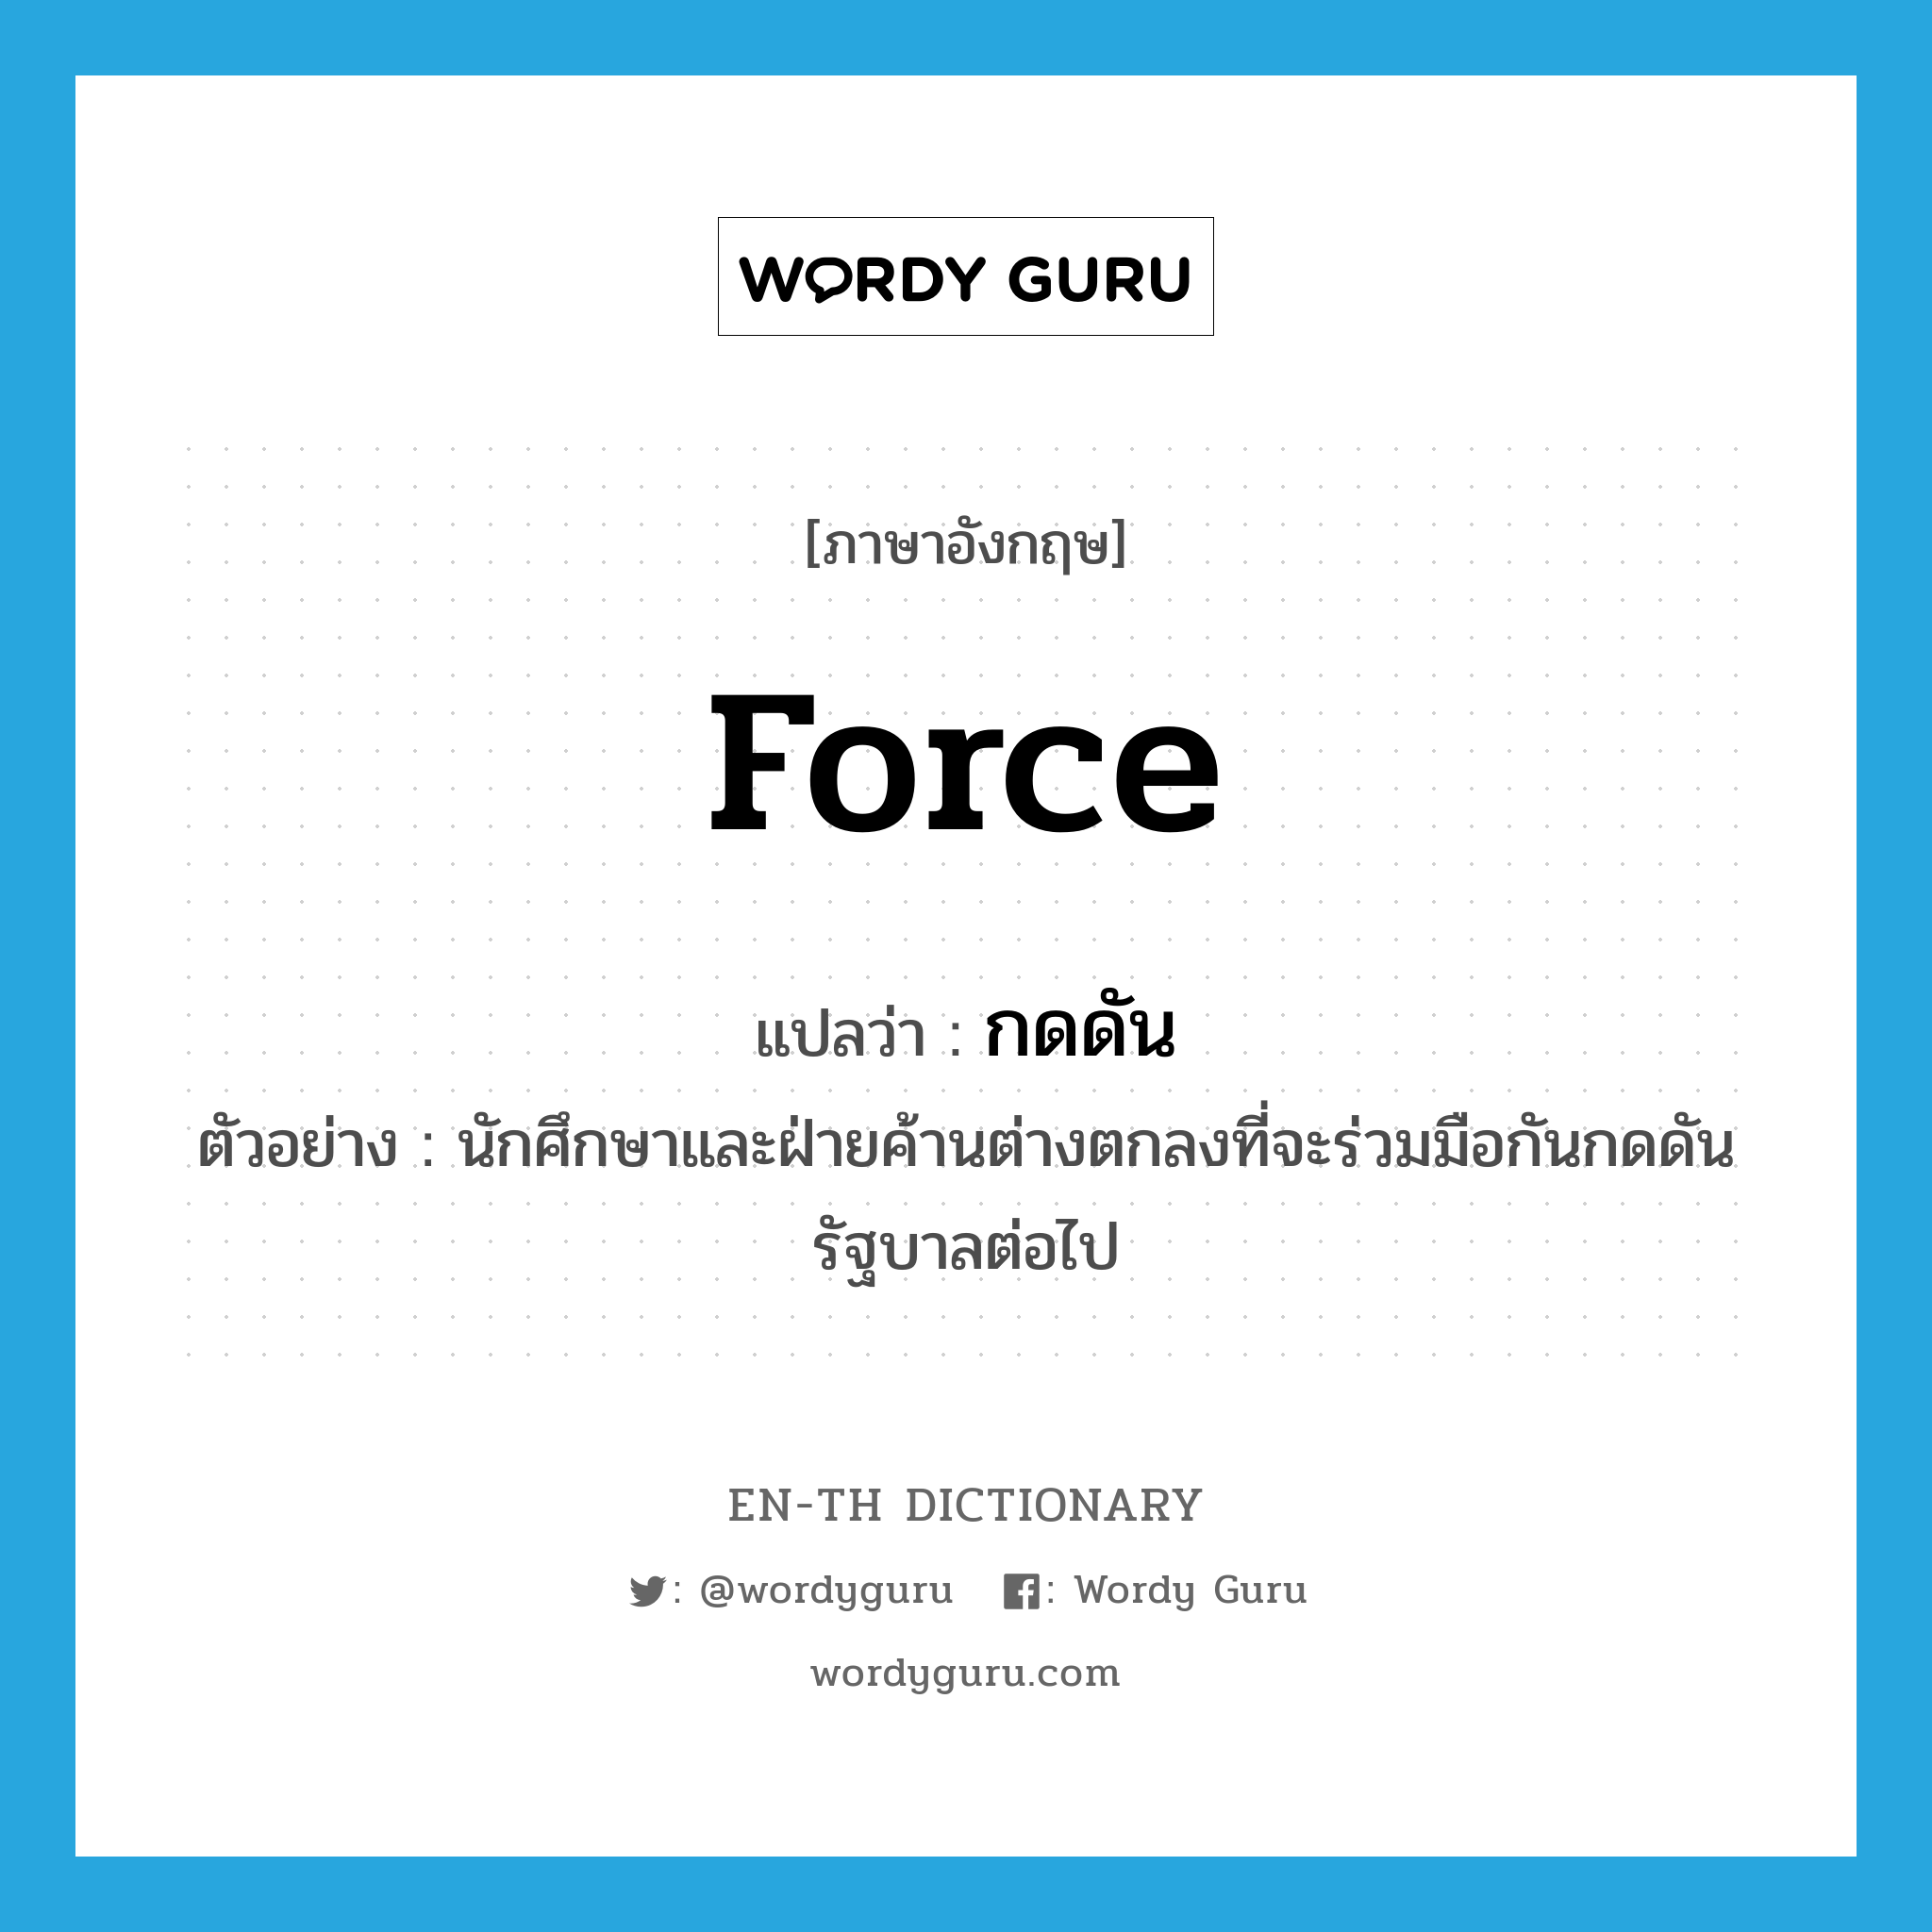 force แปลว่า?, คำศัพท์ภาษาอังกฤษ force แปลว่า กดดัน ประเภท V ตัวอย่าง นักศึกษาและฝ่ายค้านต่างตกลงที่จะร่วมมือกันกดดันรัฐบาลต่อไป หมวด V